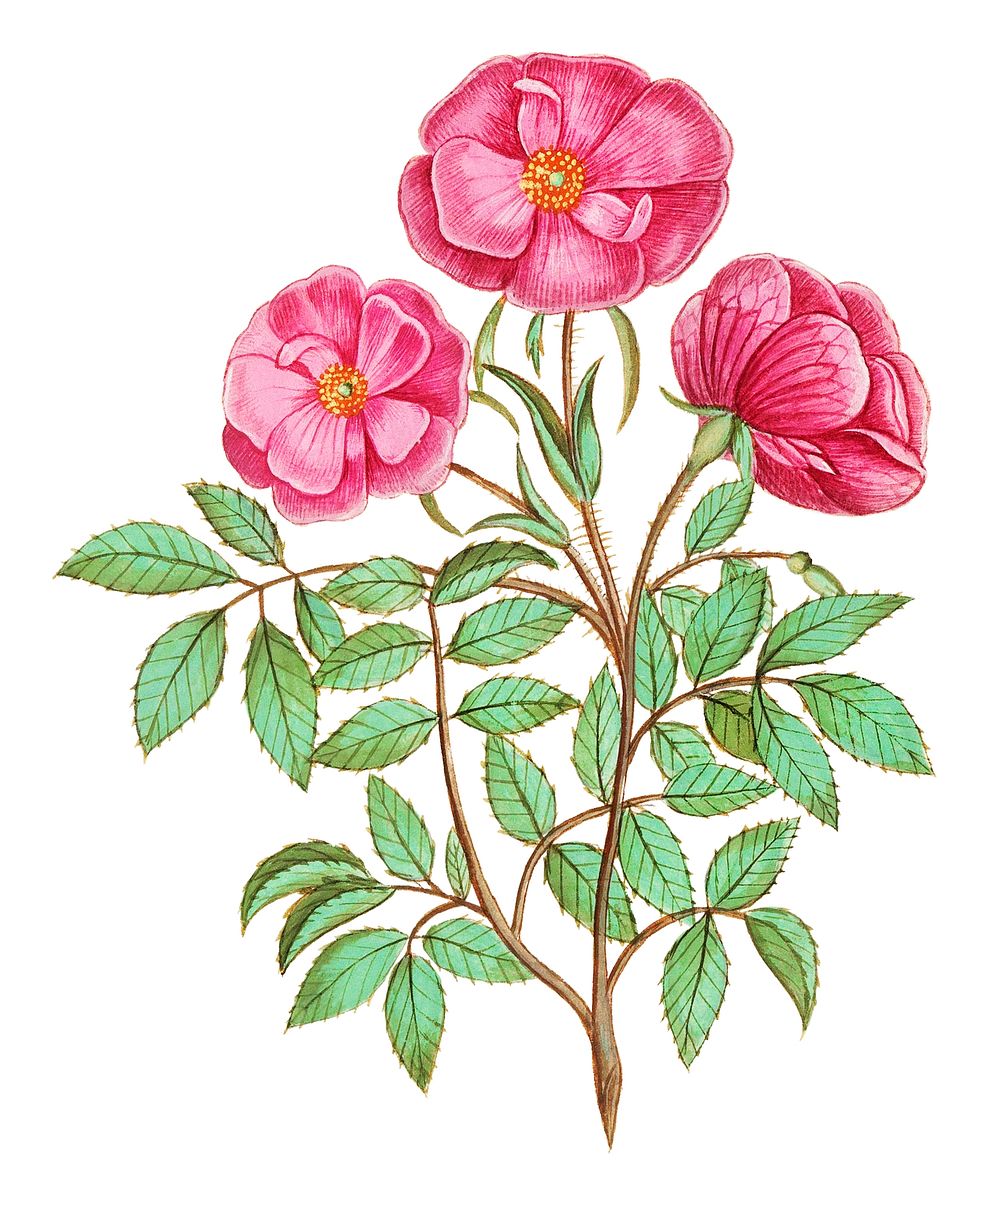 Vintage wild rose flower illustration